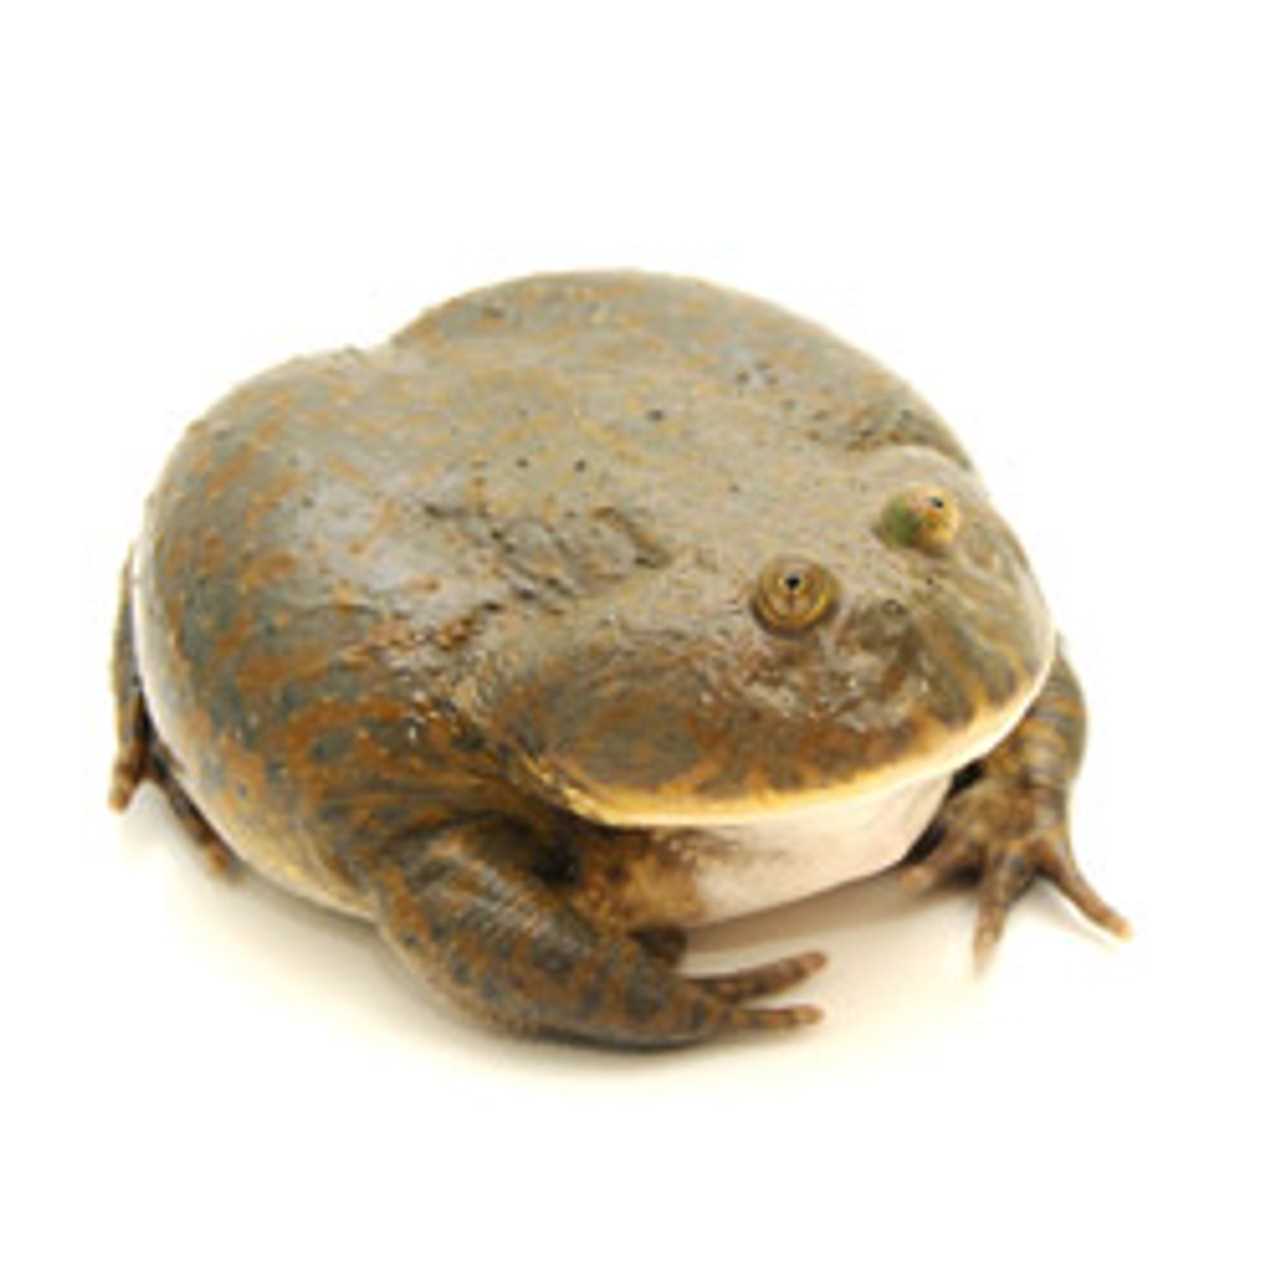 Budgett frogs